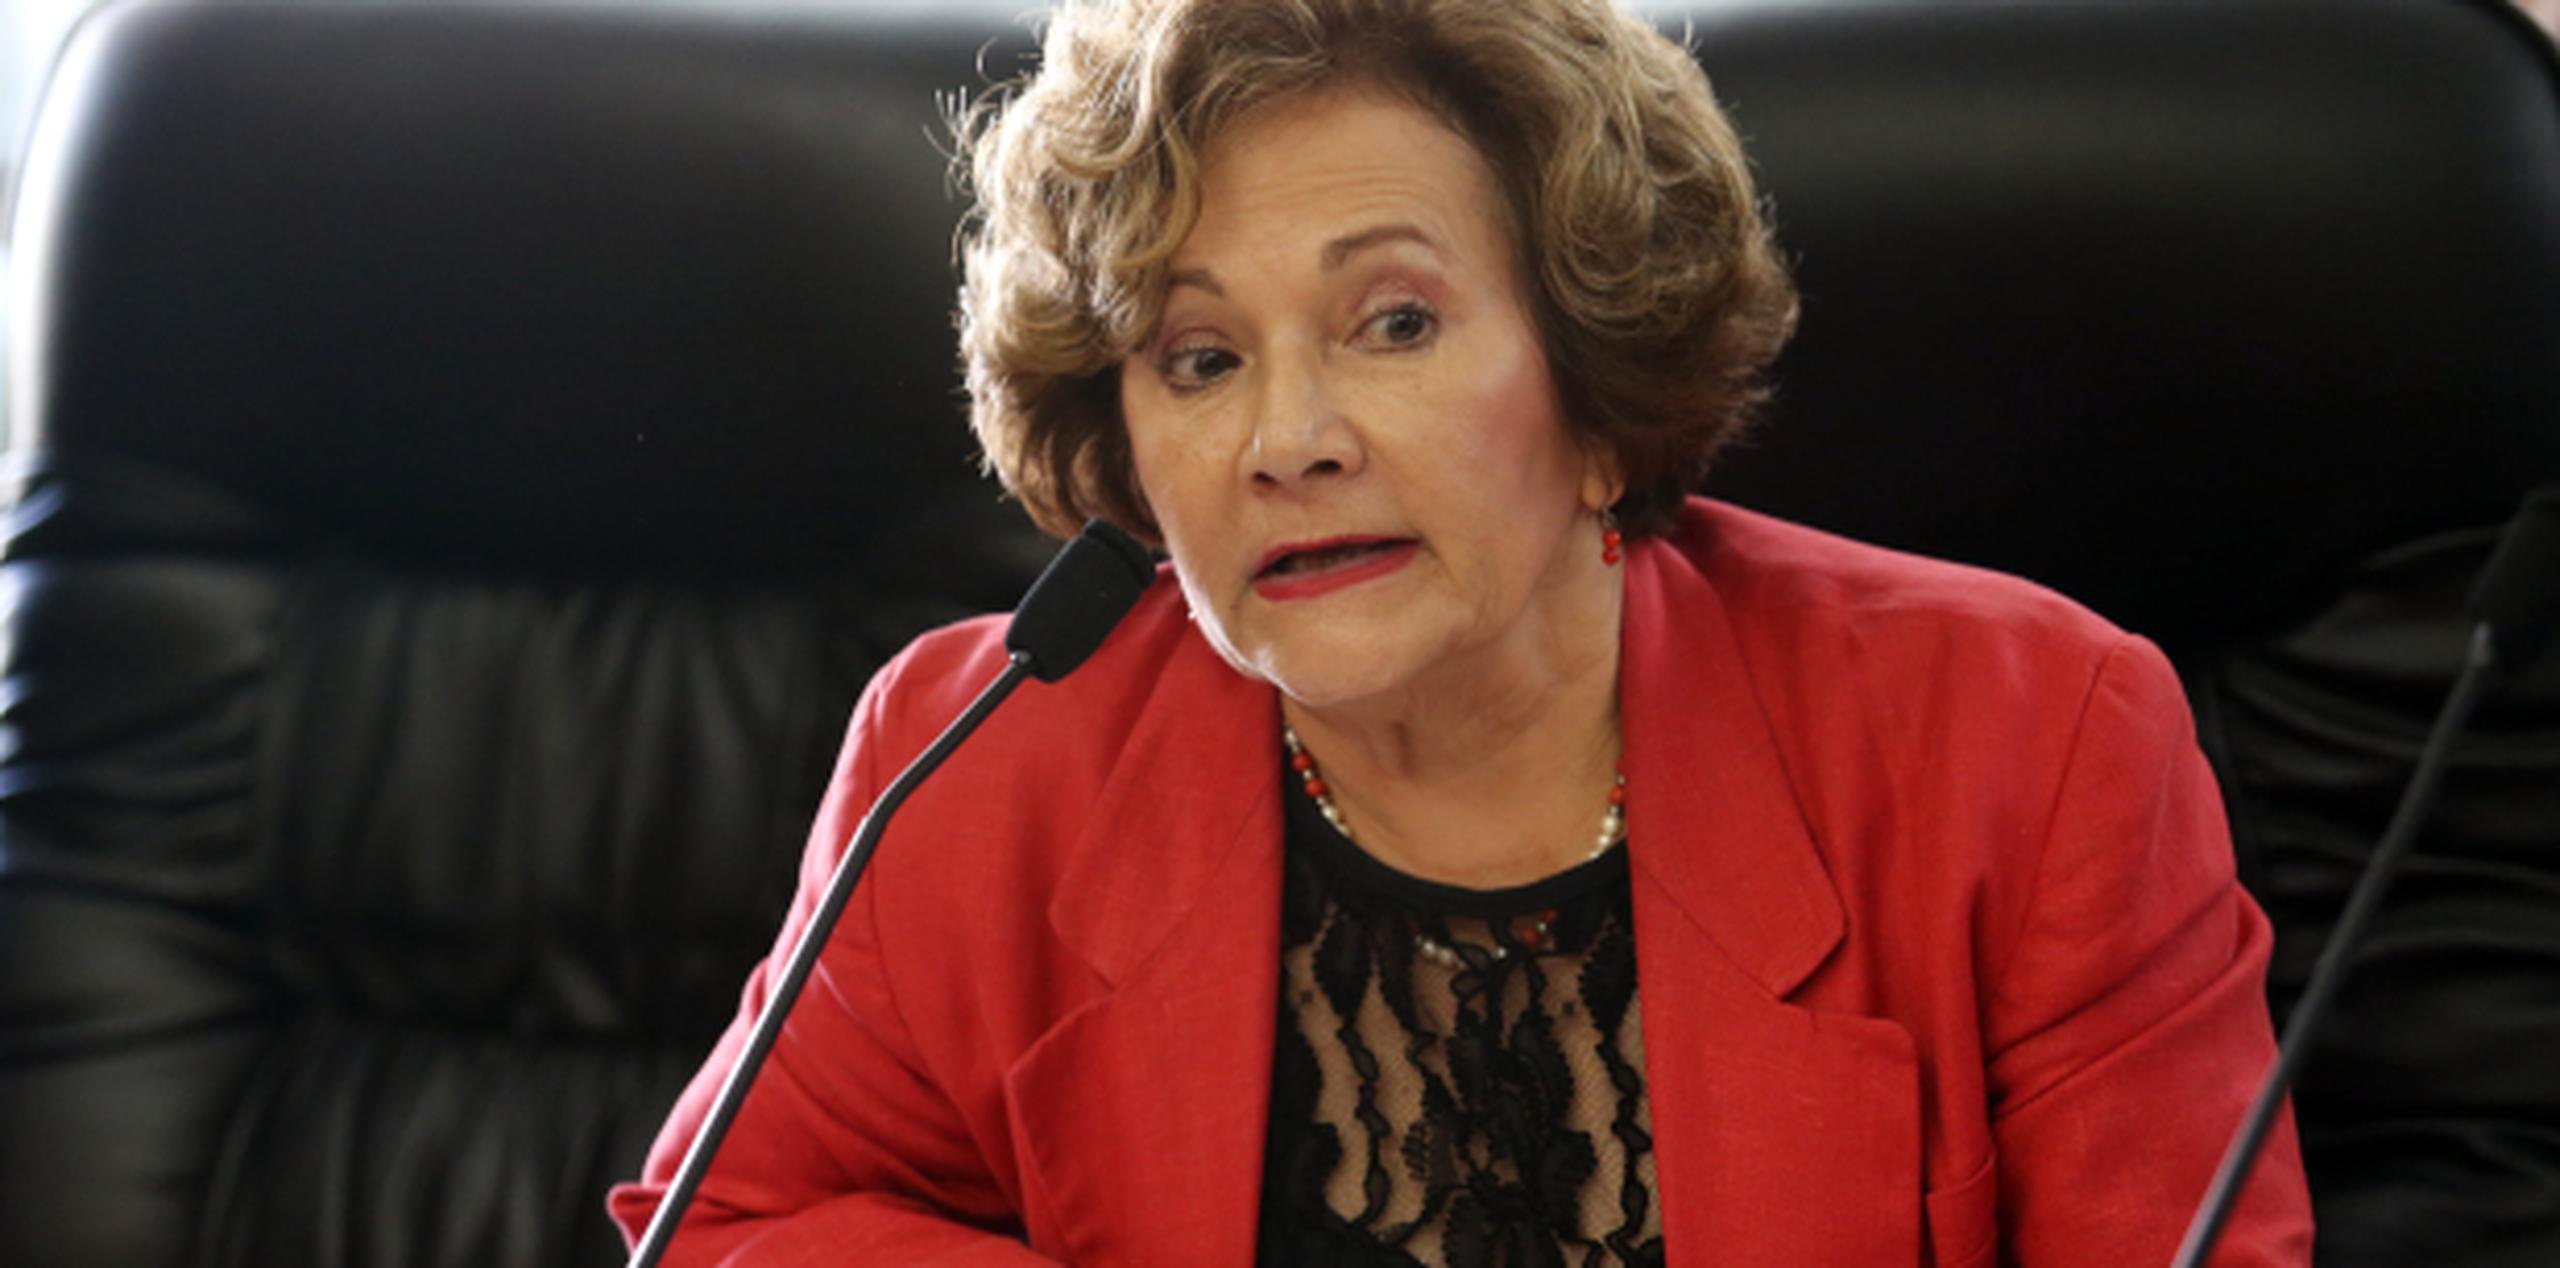 La procuradora de las personas de edad avanzada, Carmen D. Sánchez, objetó prácticamente todas las propuestas del proyecto de Ley. (JUAN.MARTINEZ@GFRMEDIA.COM)